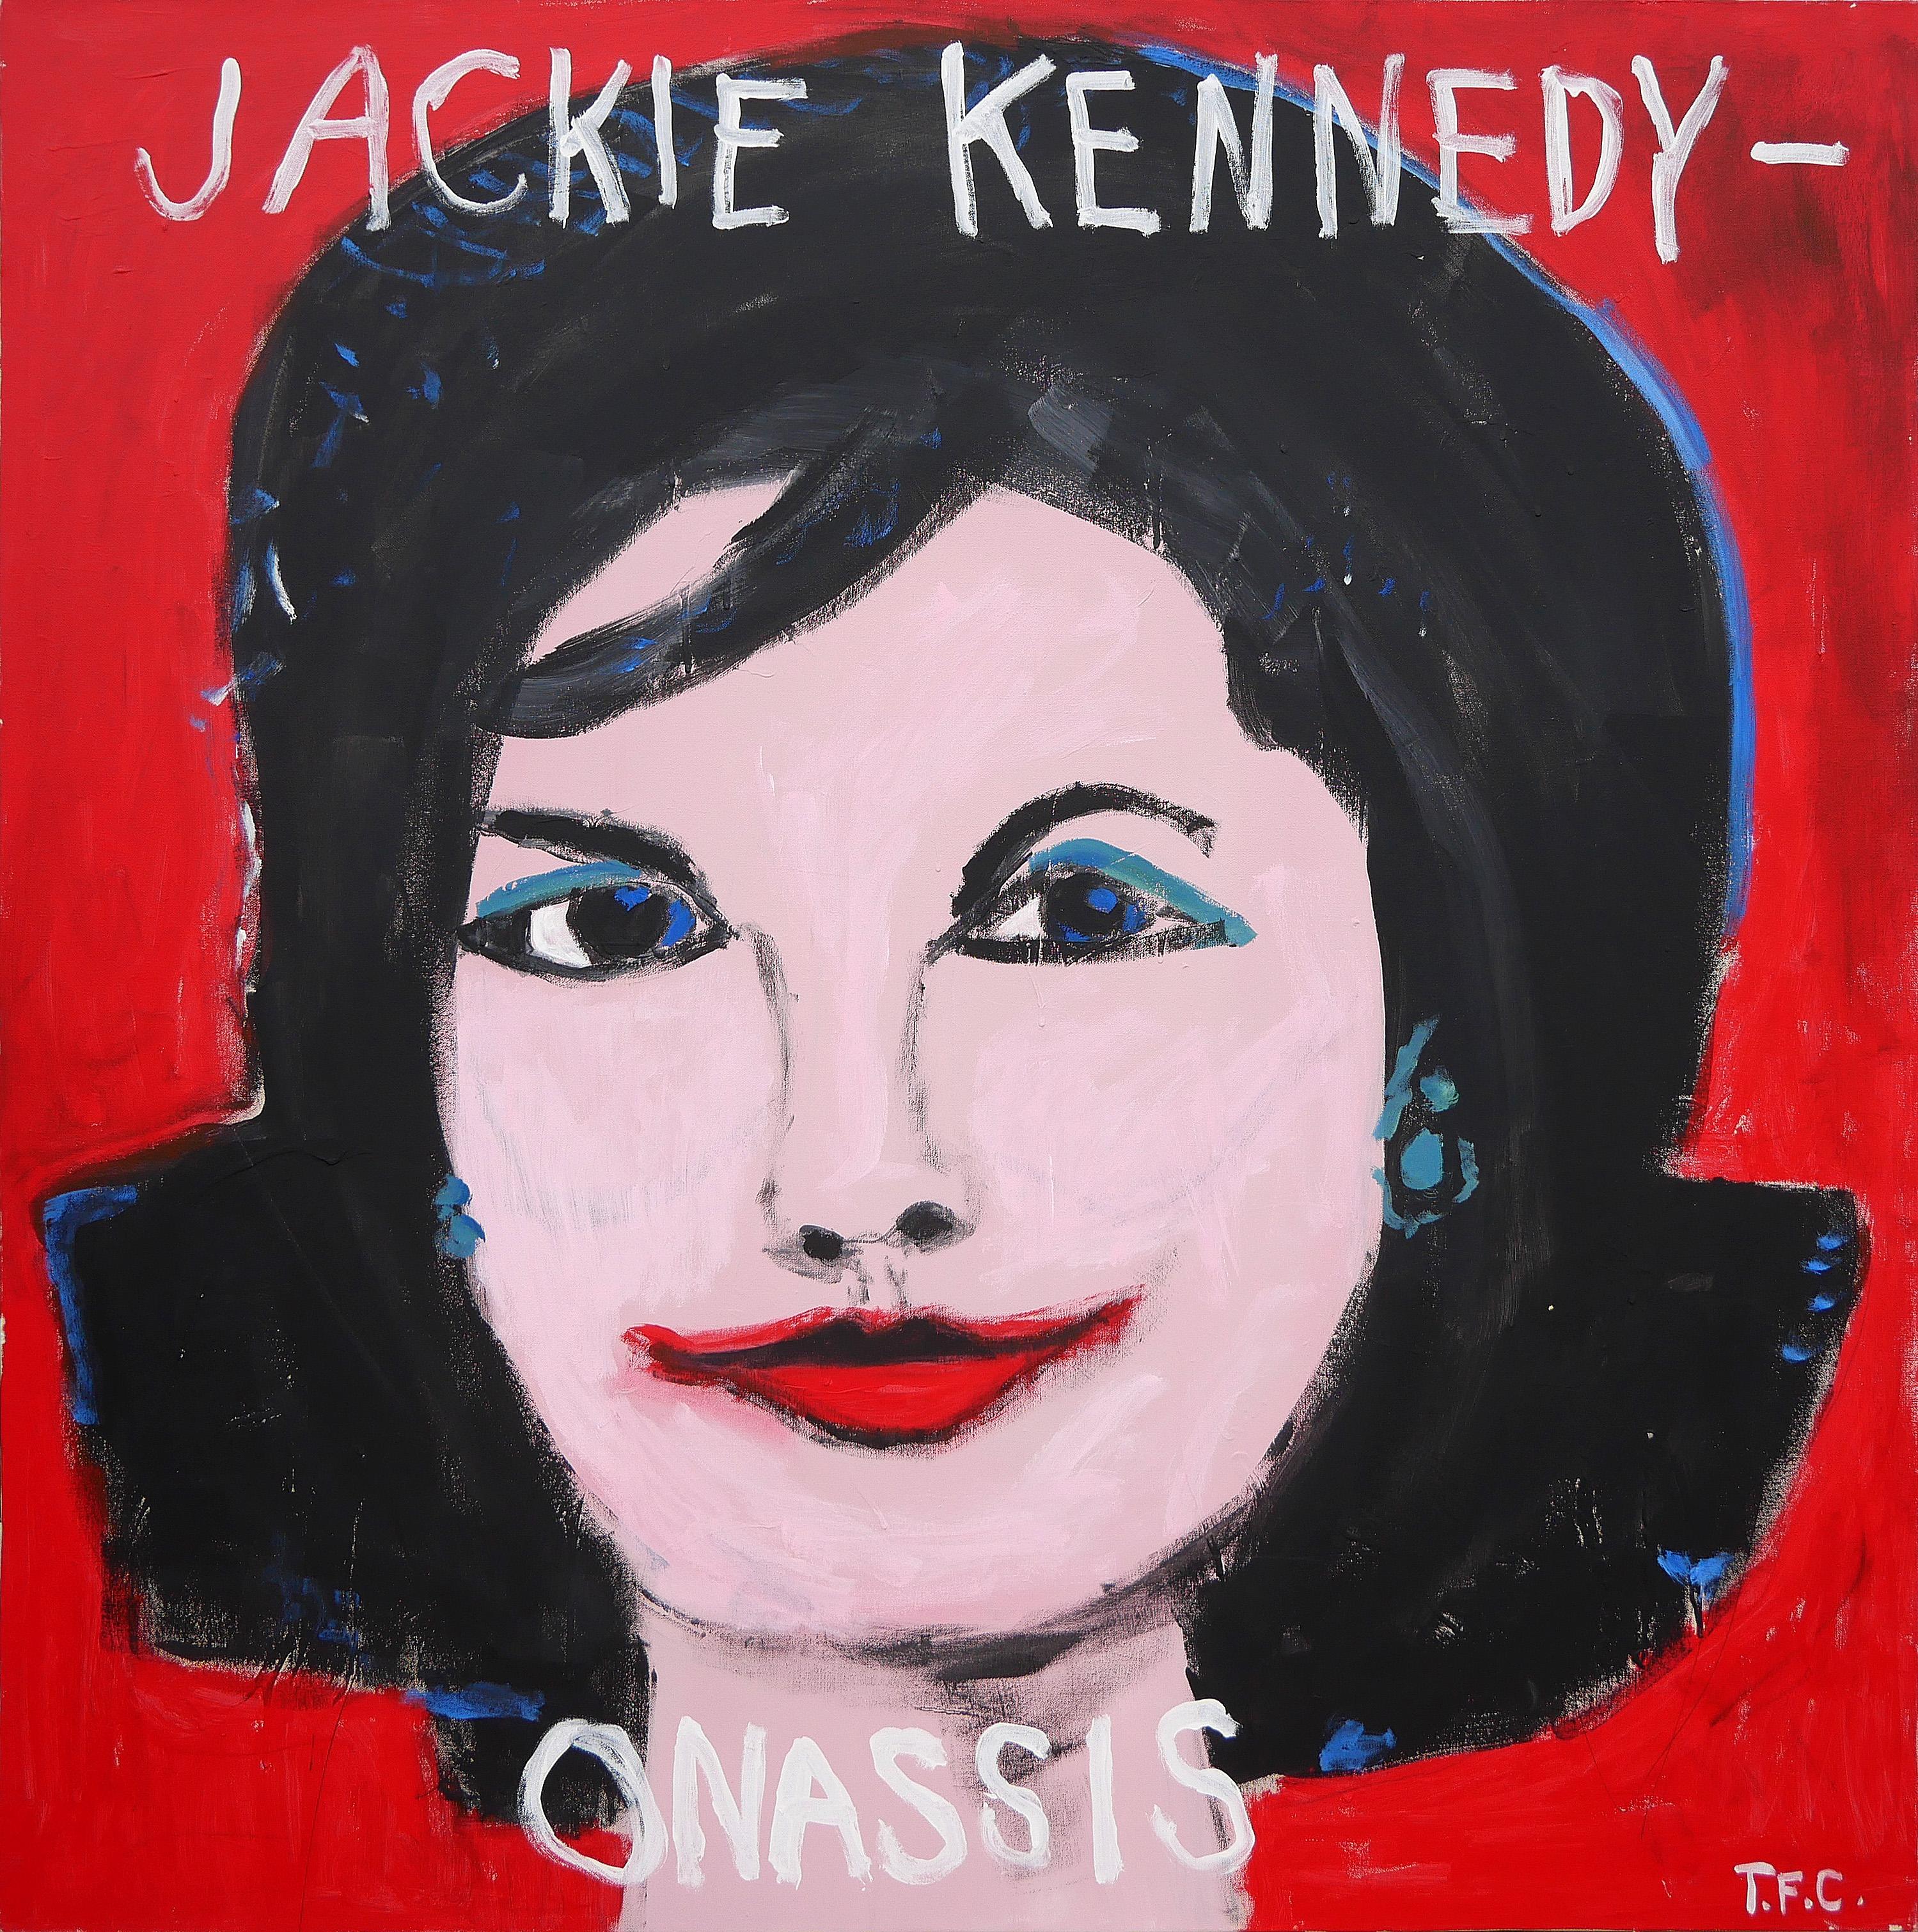 Portrait Painting Tyler Casey - "Jackie Kennedy-Onassis" Peinture de portrait abstrait contemporaine rouge de style Pop Art 